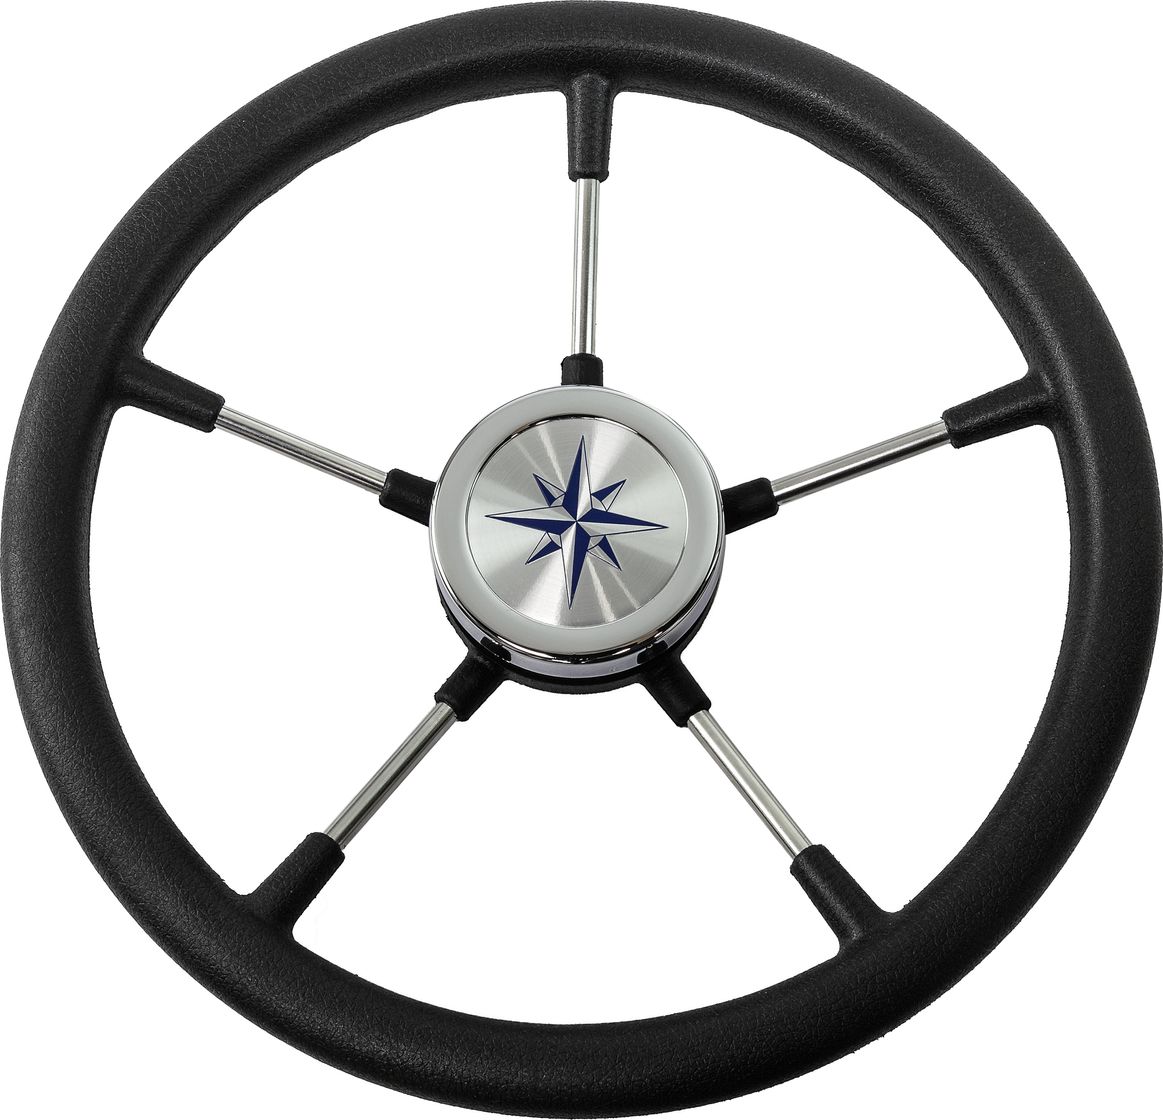 Рулевое колесо RIVA RSL обод черный, спицы серебряные д. 360 мм VN735022-01 рулевое колесо leader plast обод серебряные спицы д 360 мм vn8360 01